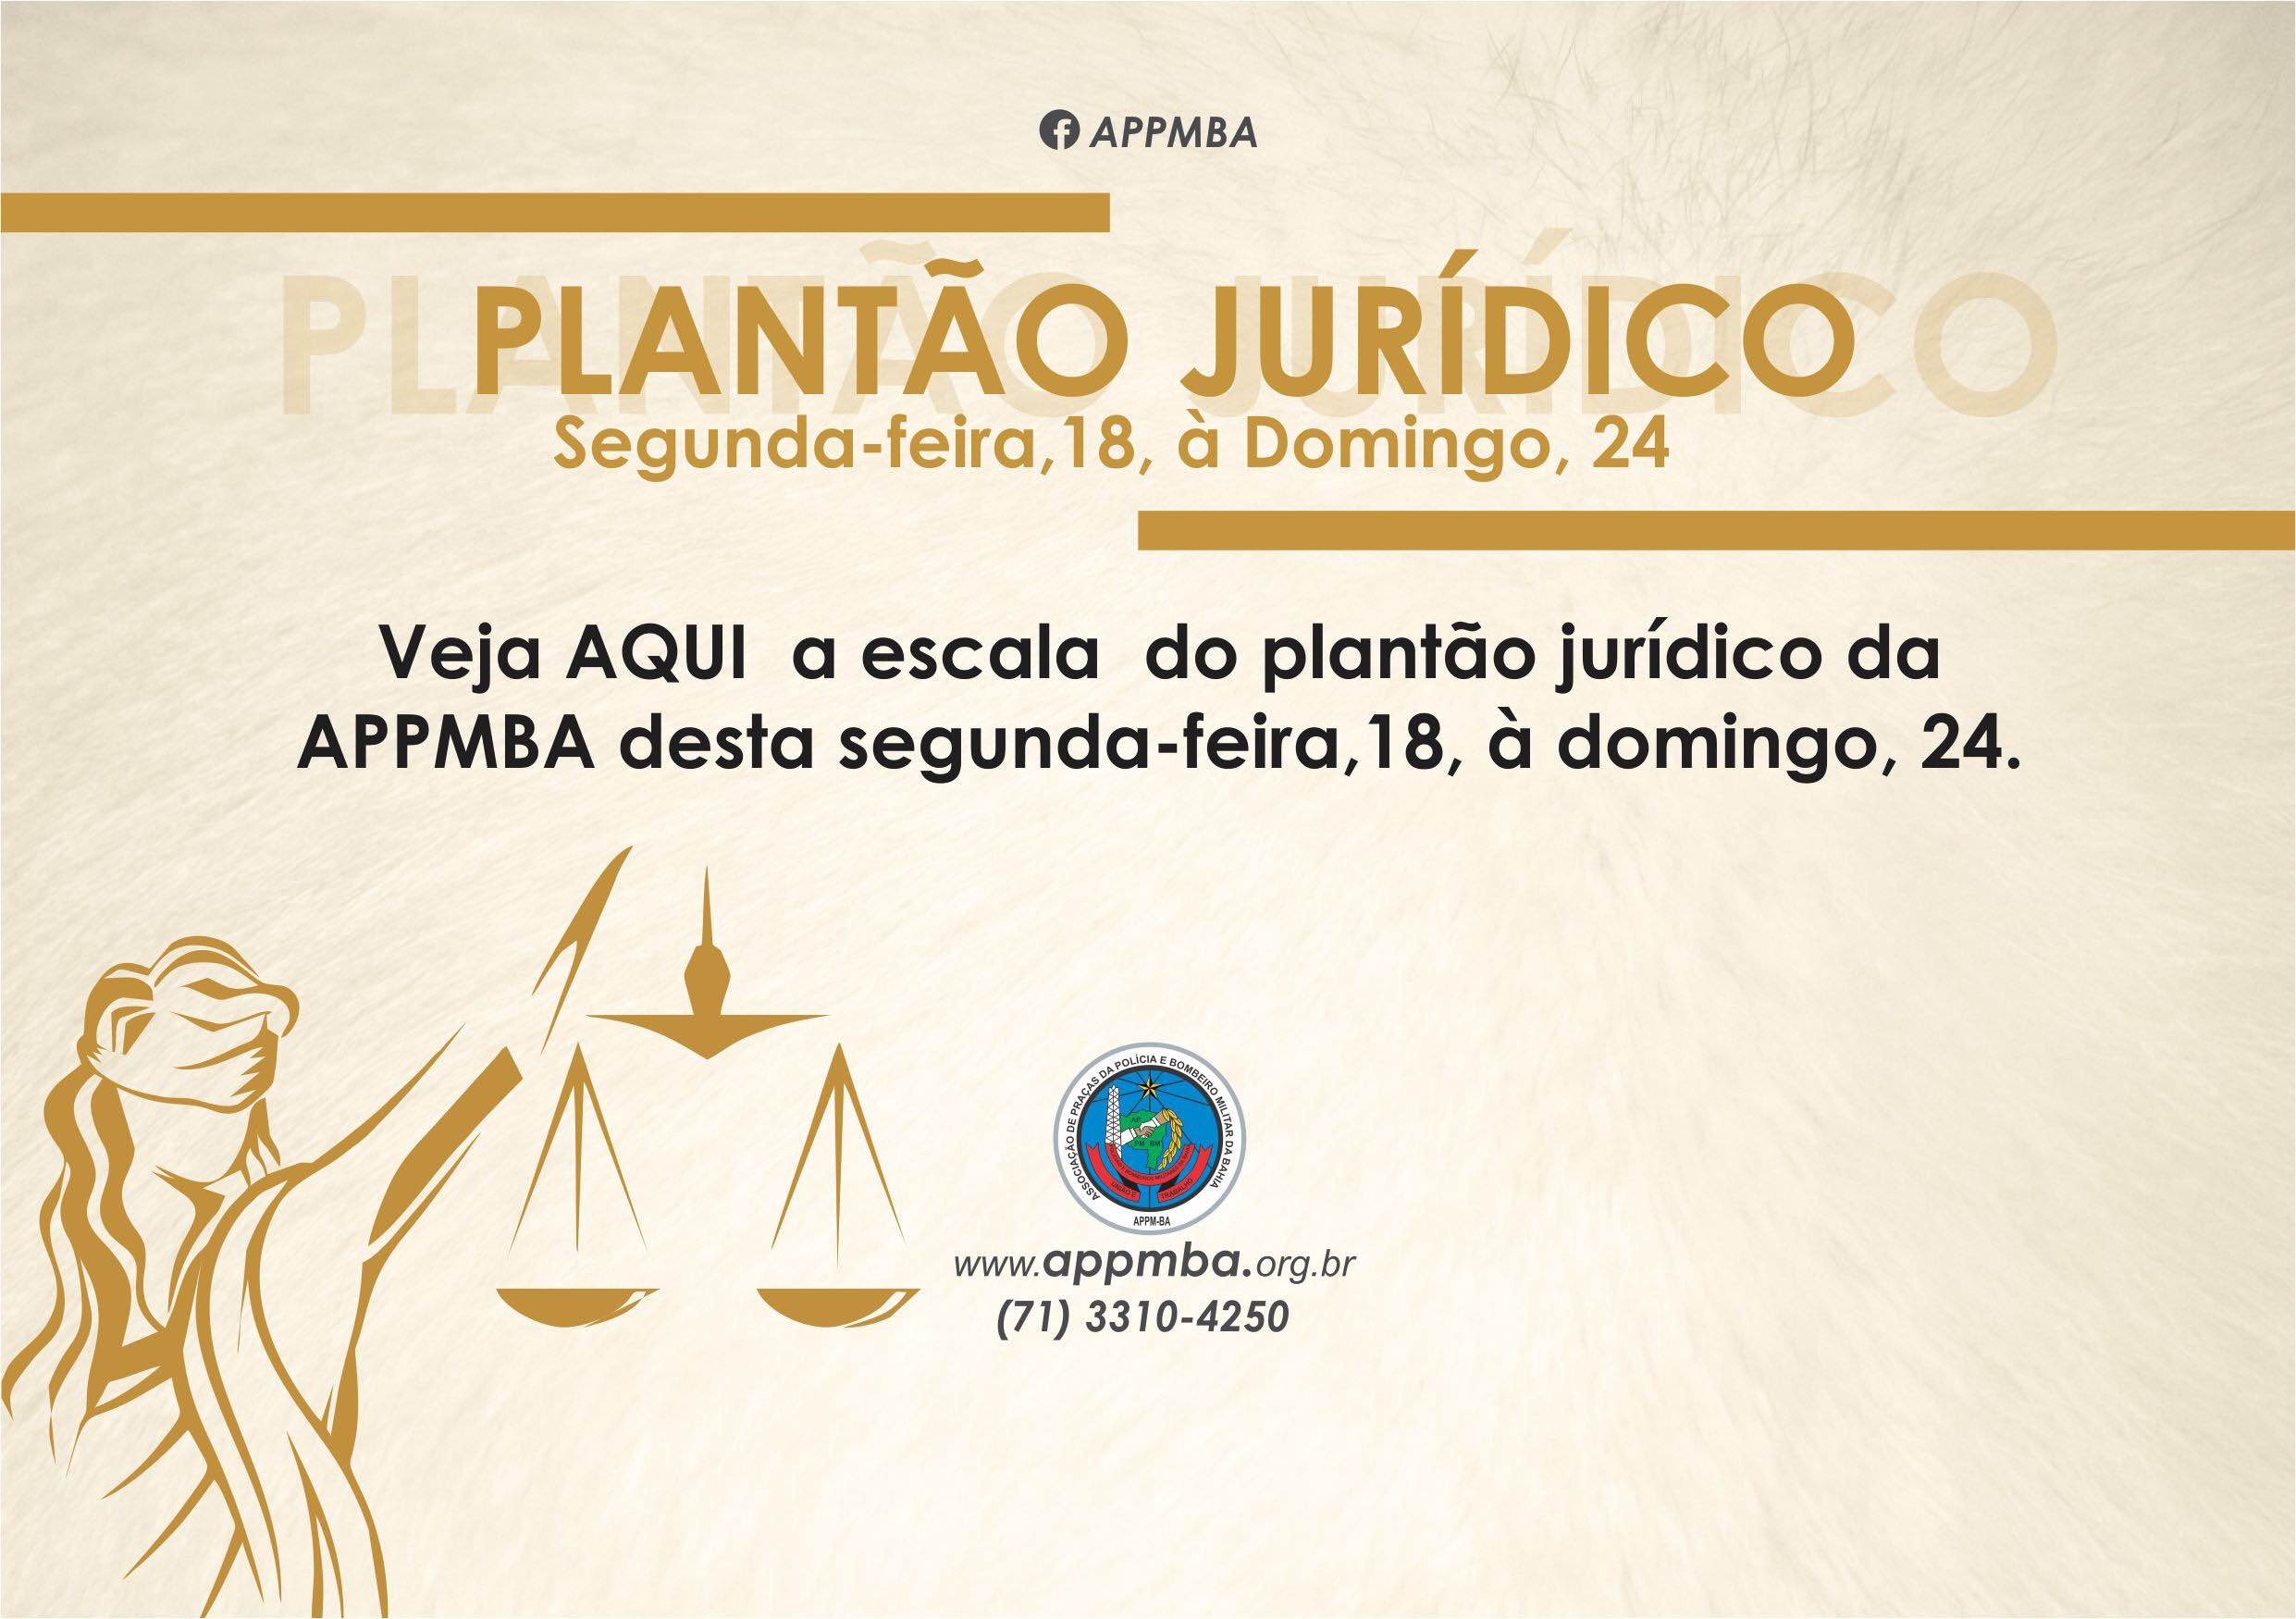 Plantão Jurídico APPM-BA, dias 18 à 24/9